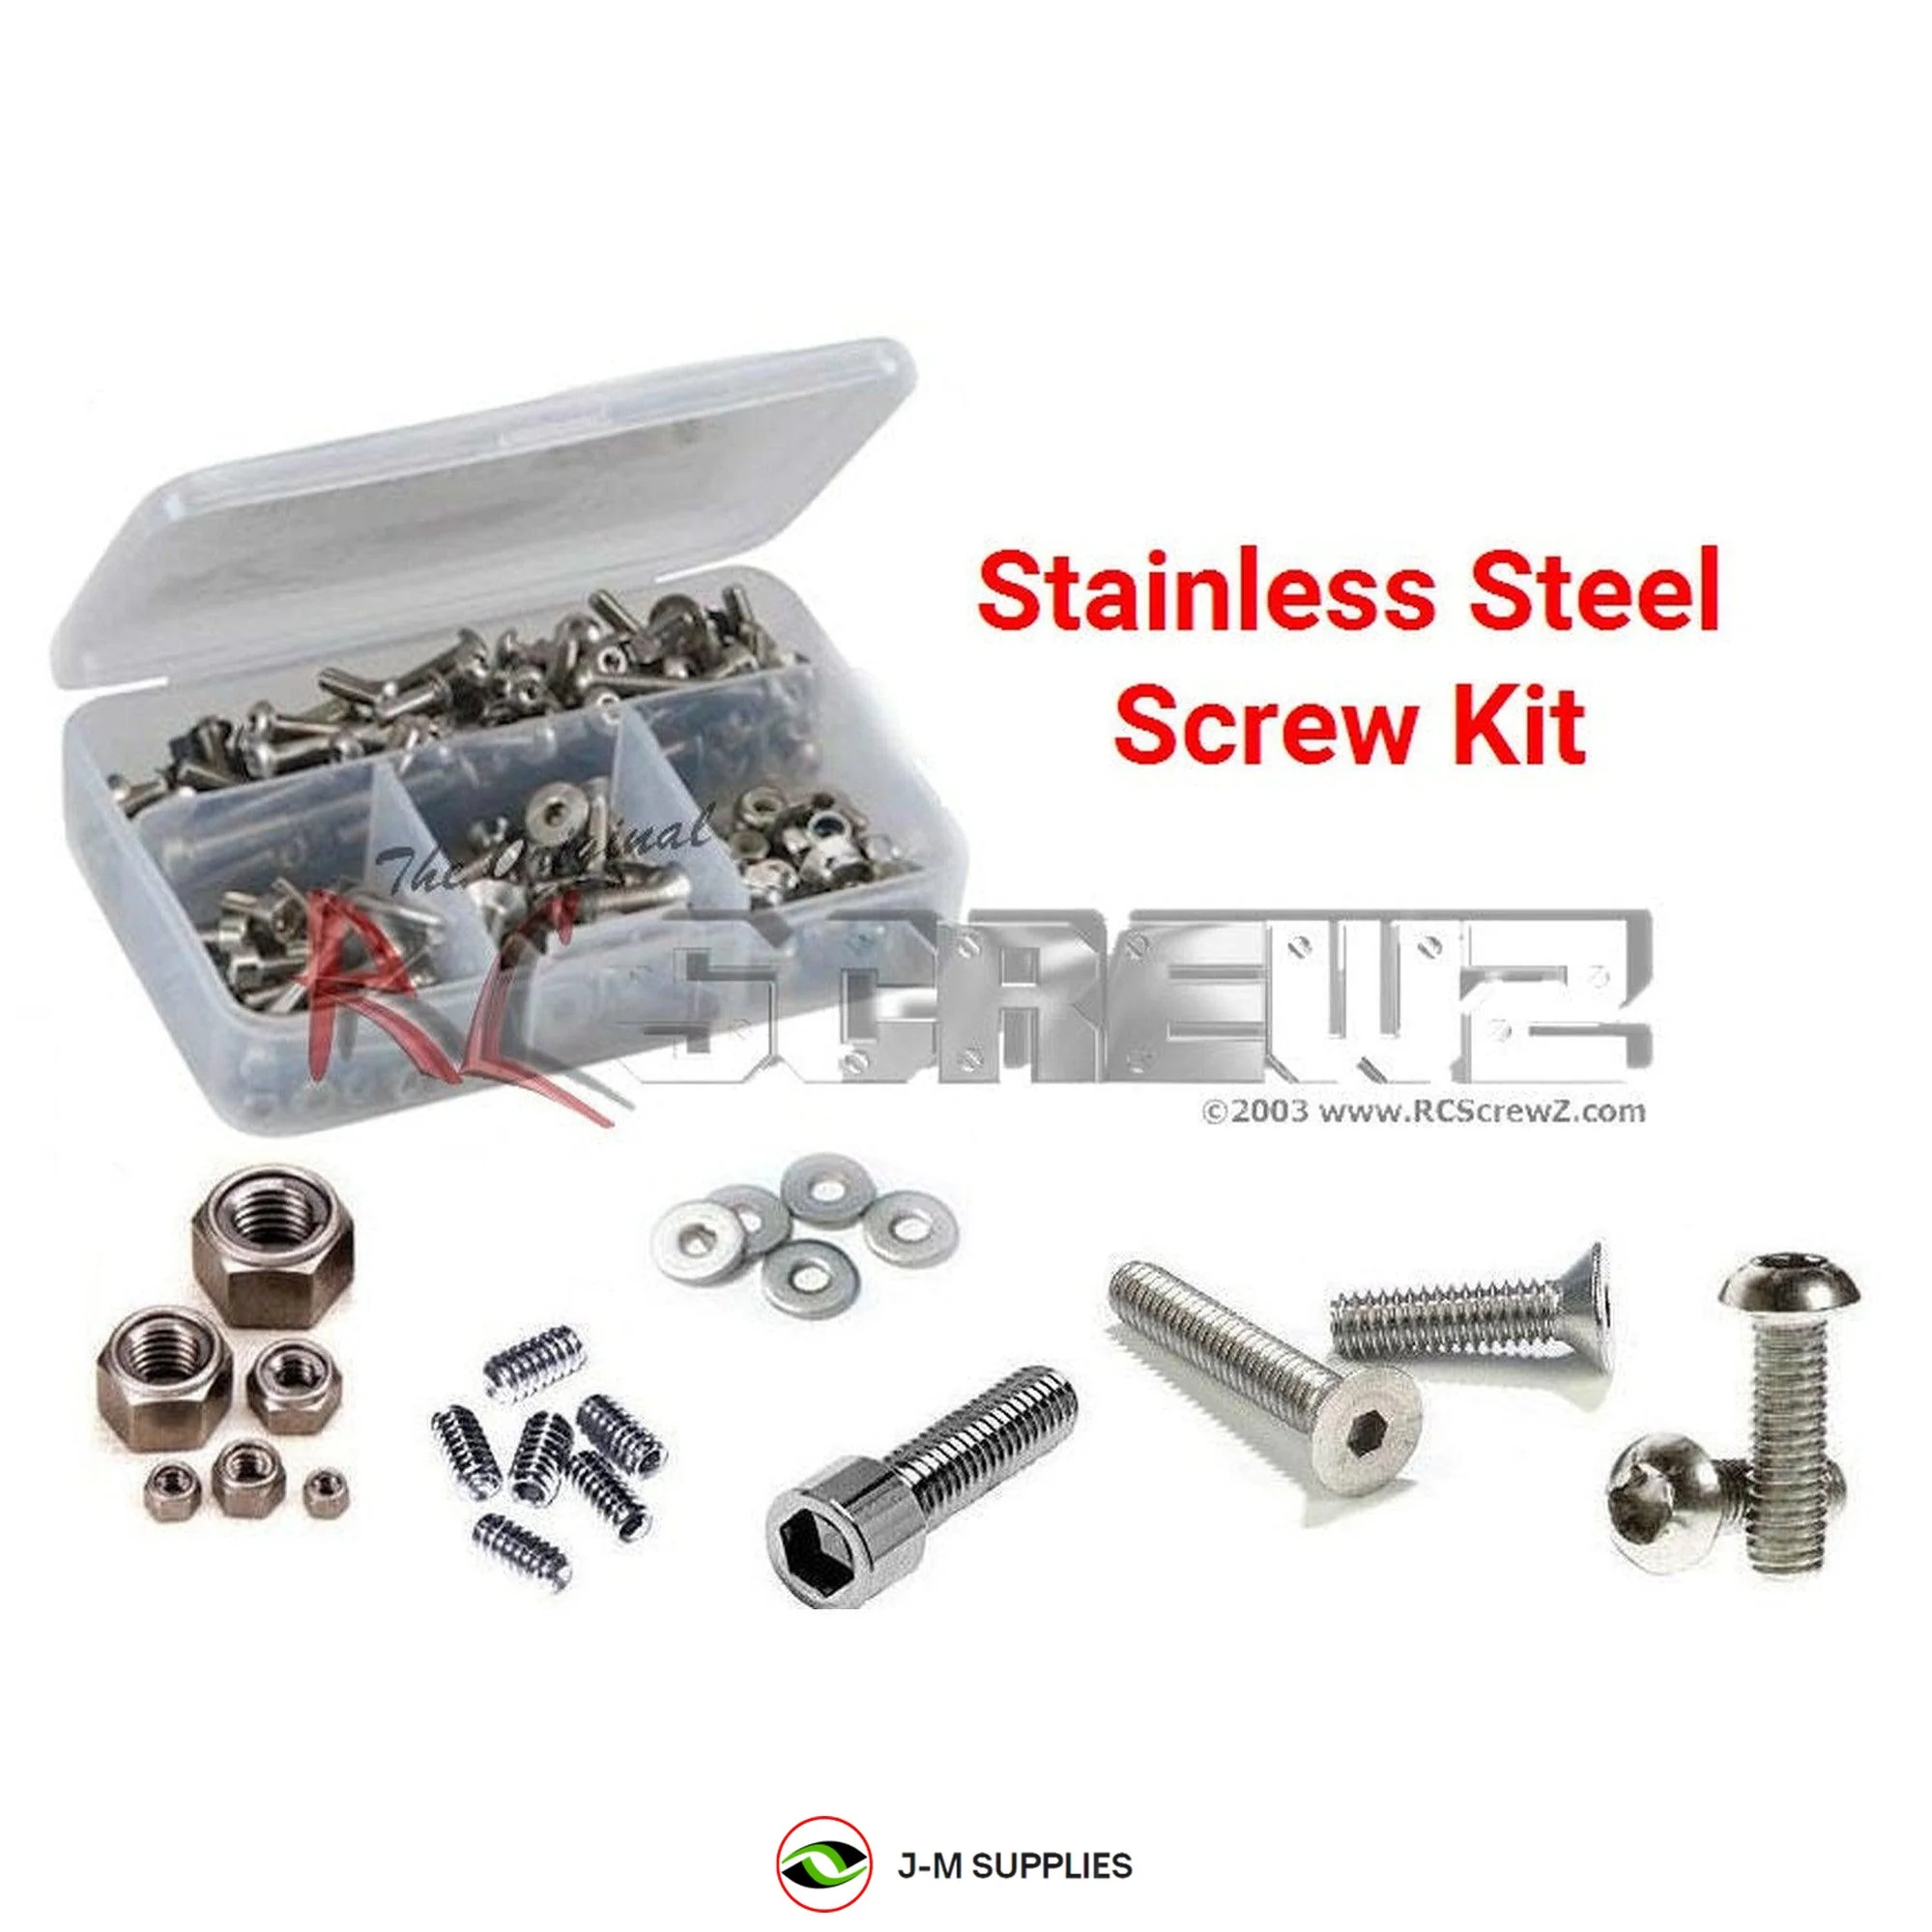 RCScrewZ Stainless Steel Screw Kit alg046 for Align T-REX 600E #RH60E10XT Heli - Picture 1 of 12